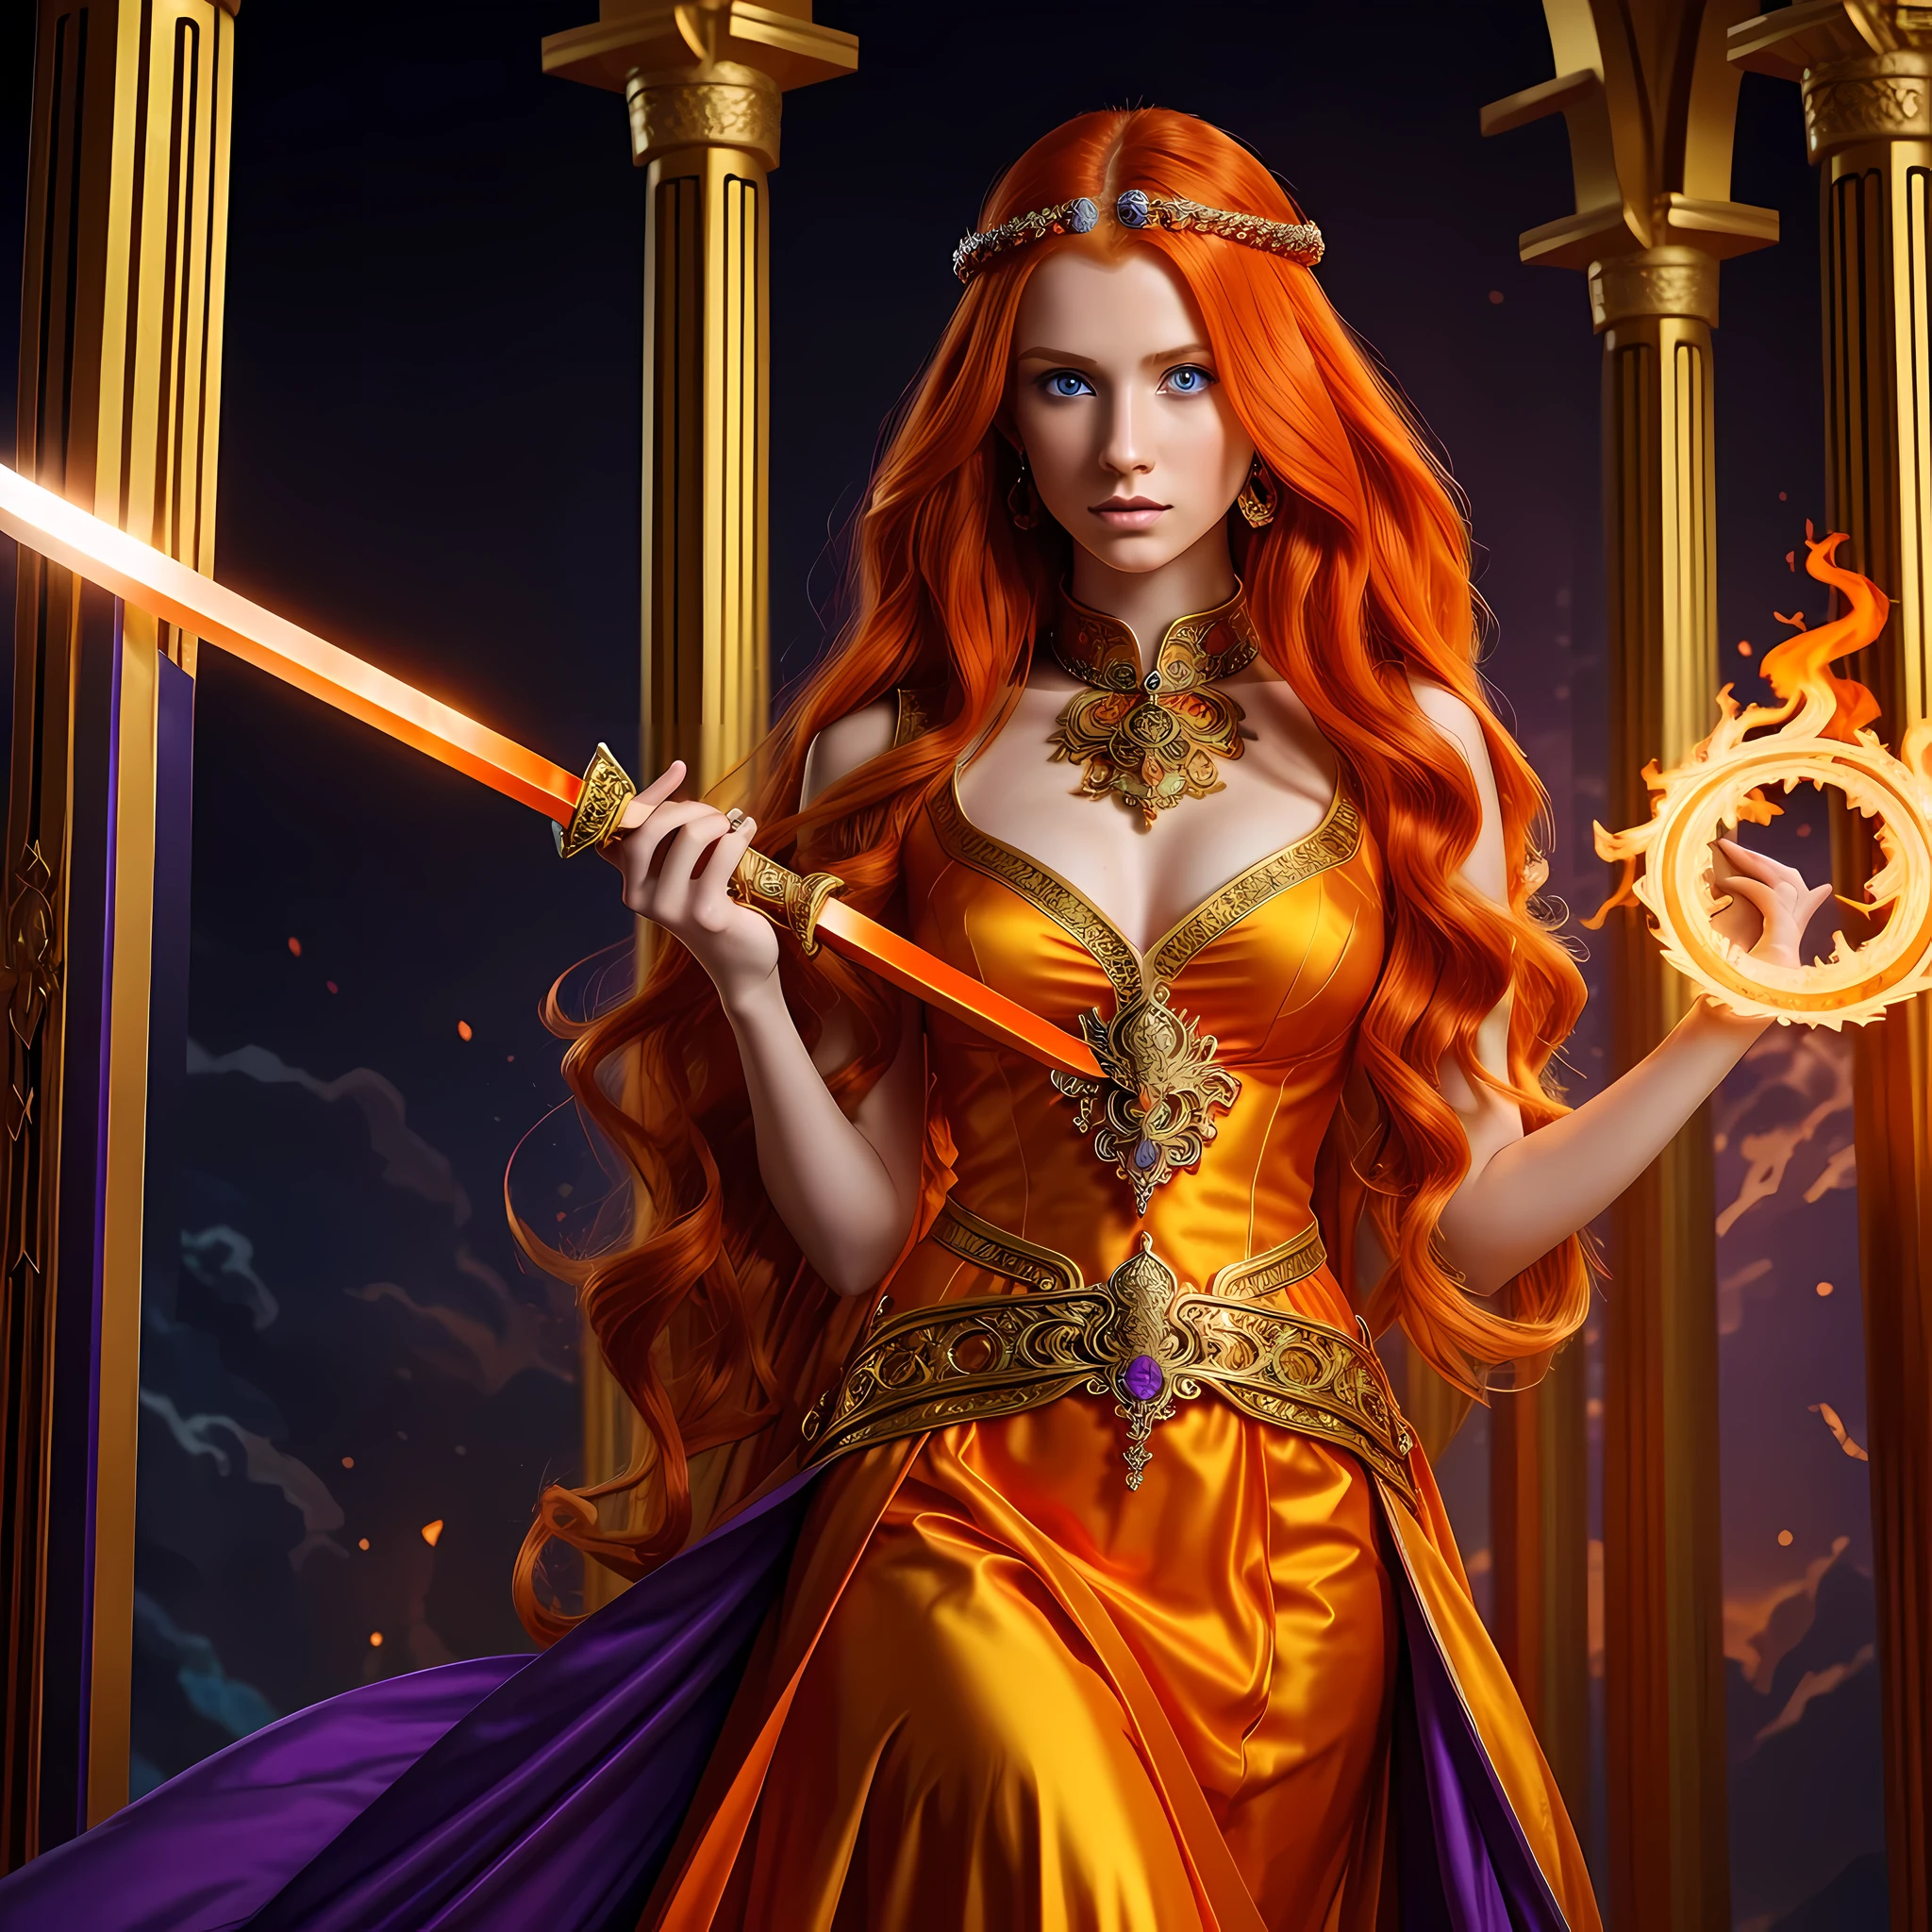 美丽的年轻女子, 高挑的女孩, 亮橙色的头发, 橙色长波浪发, 明亮的蓝眼睛, 皮肤苍白, 身穿带有华丽金色和紫色图案的红色武士服, 朴素的服装, 在用紫色石头砌成的寺庙里, 拿着一把橙色的长剑, 火热的背景, 火焰, 戏剧作品, 高品质数字艺术